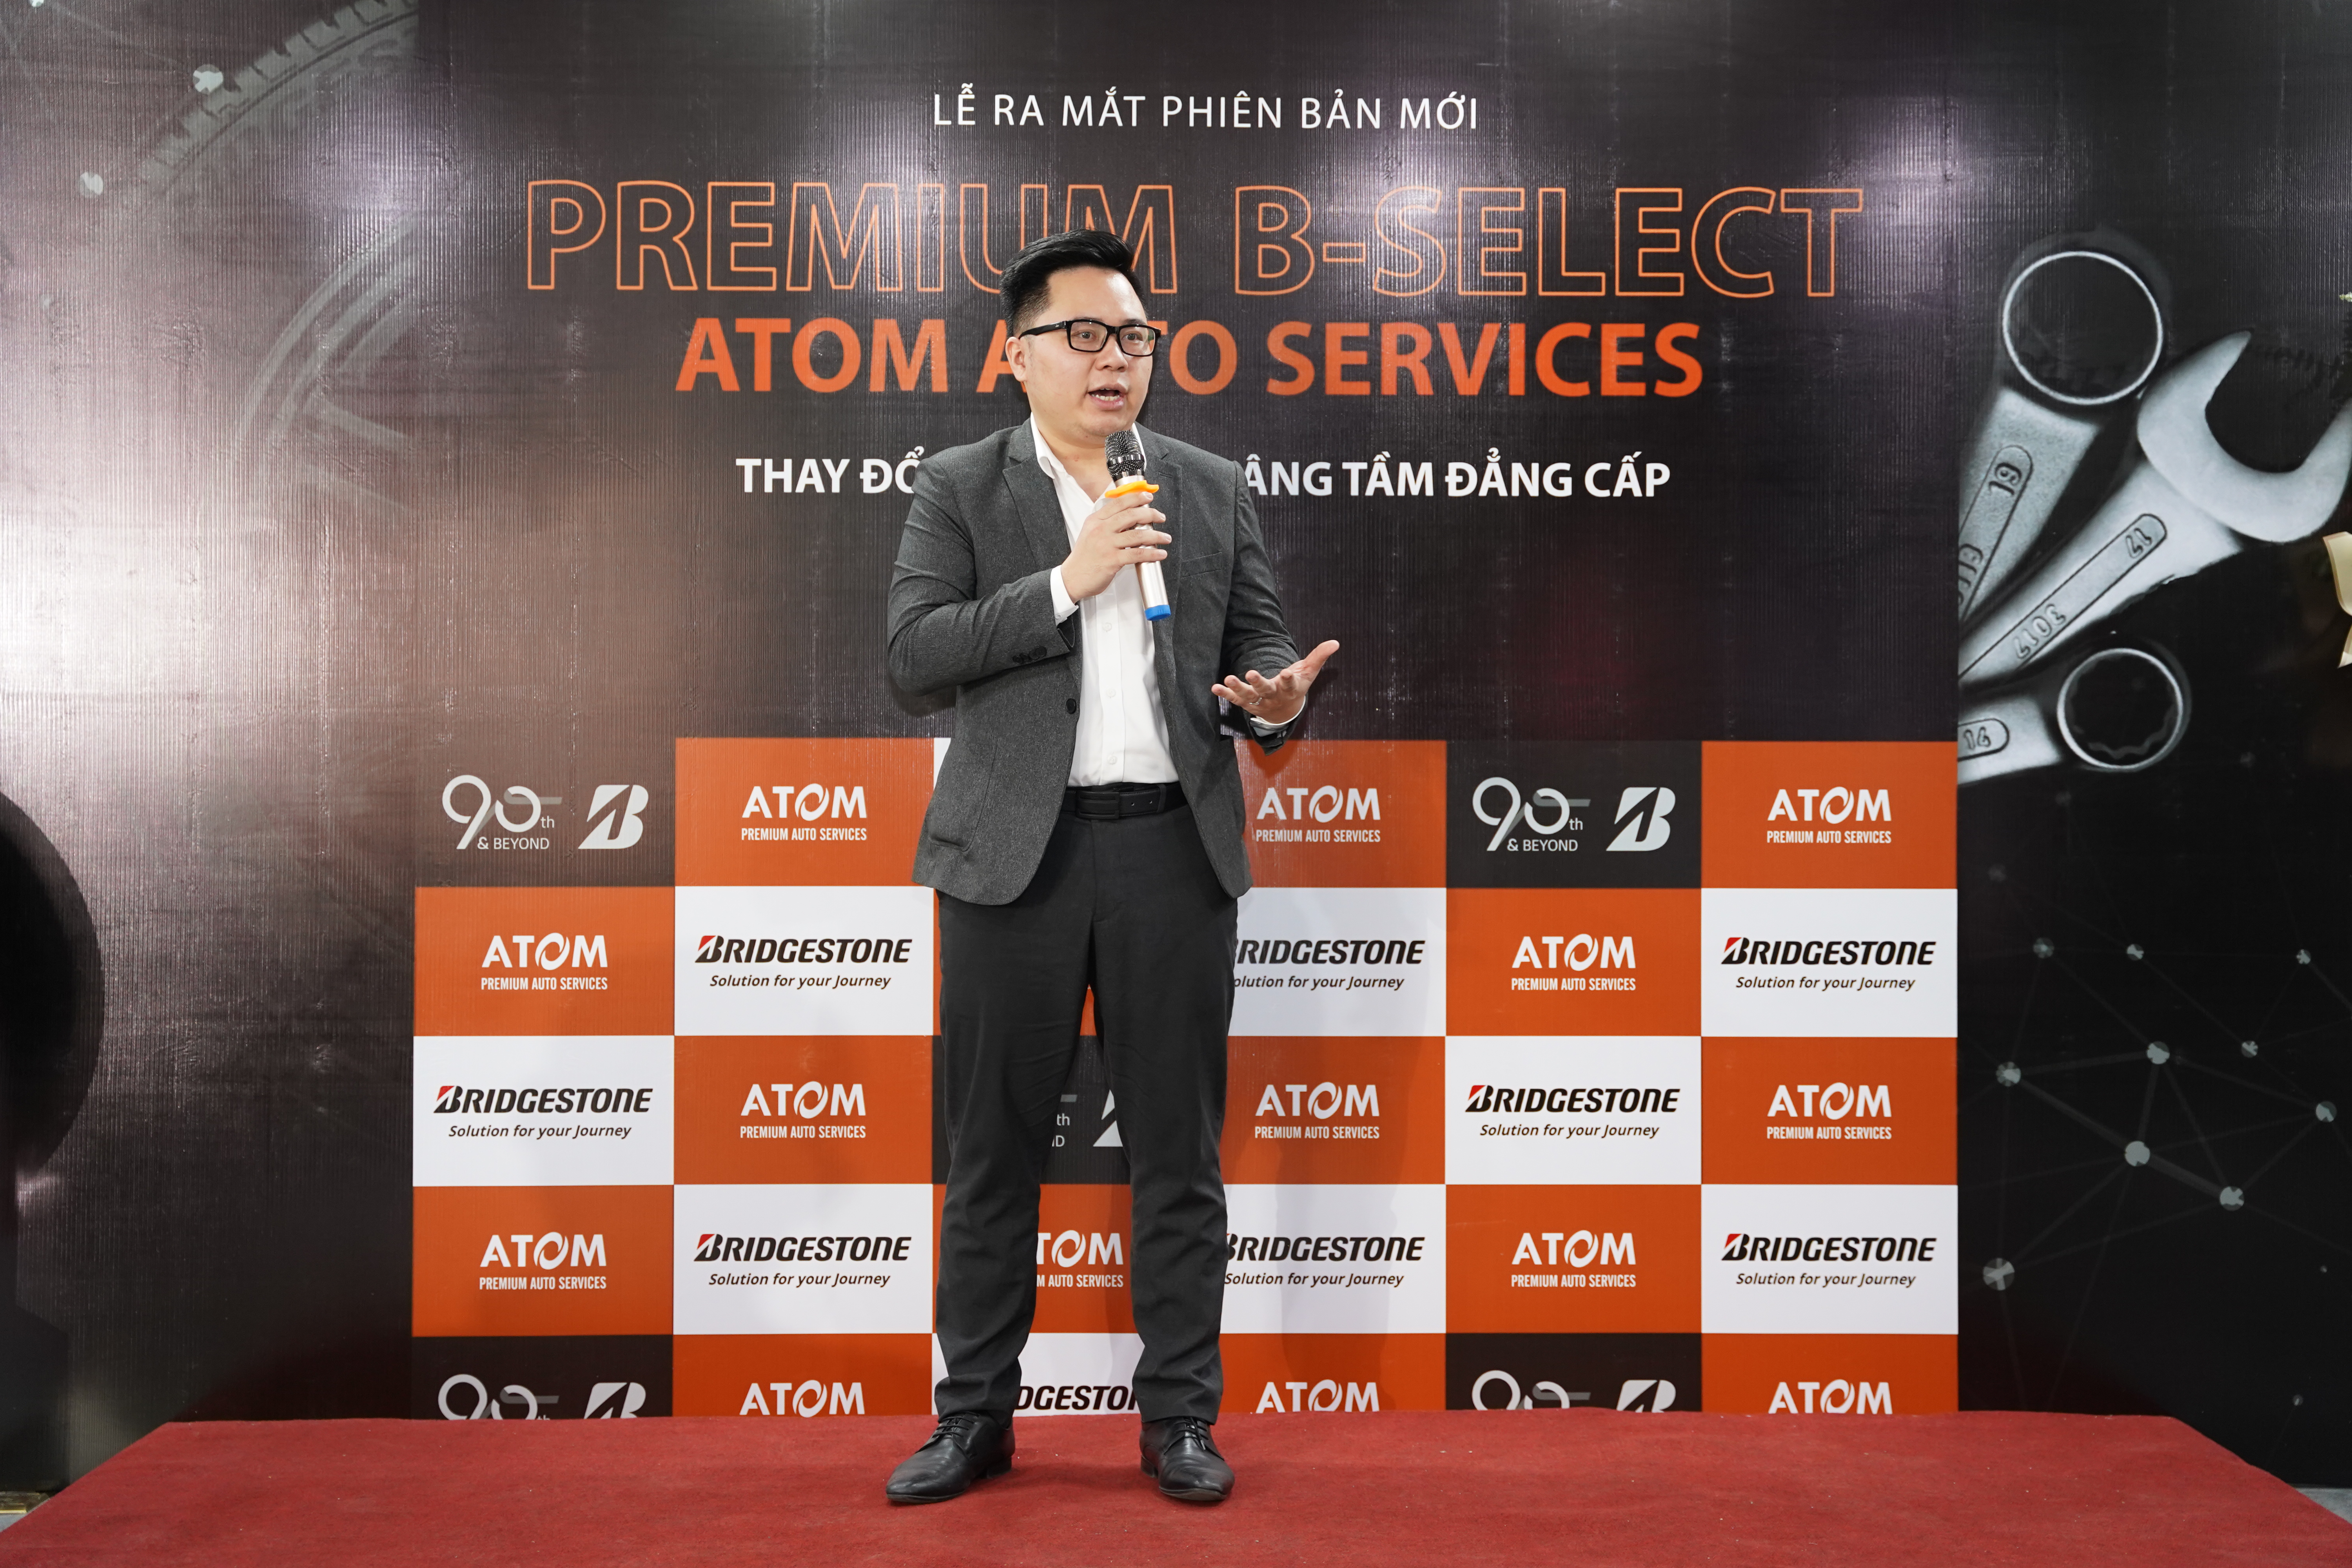 Premium B-Select Atom chính thức khai trương tại Long Biên - Ảnh 1.